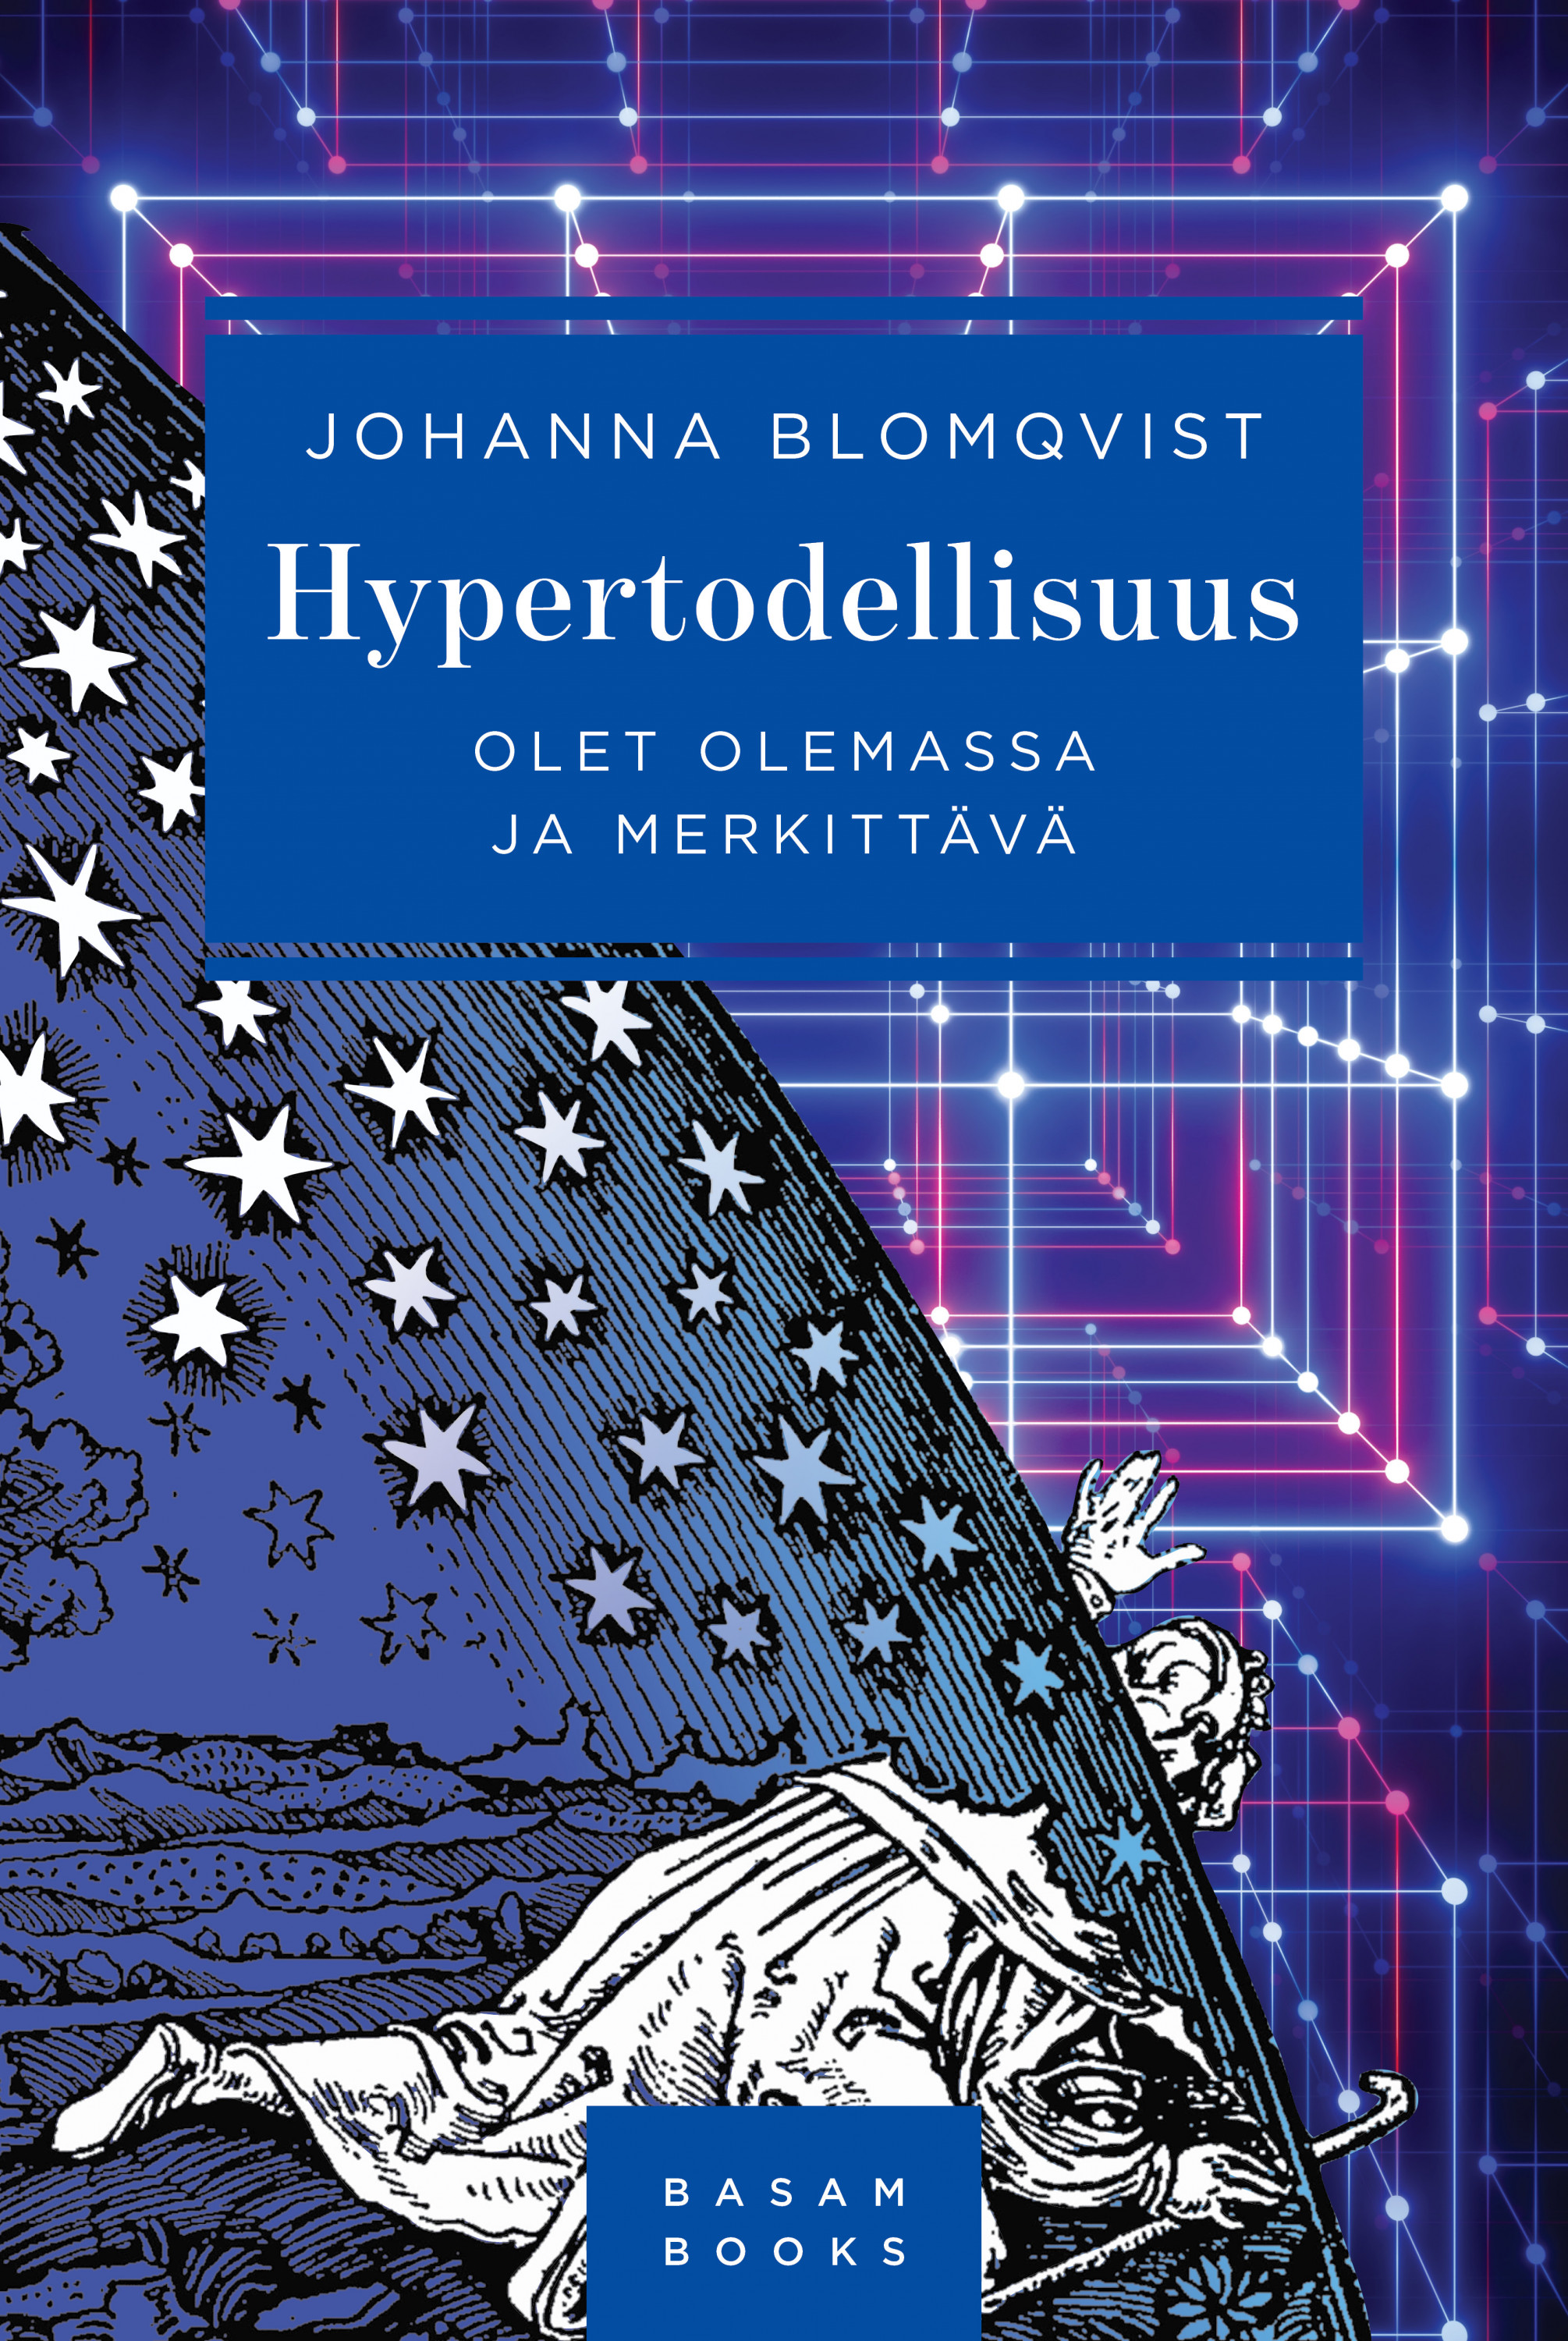 Blomqvist, Johanna - Hypertodellisuus: Olet olemassa ja merkittävä, e-bok